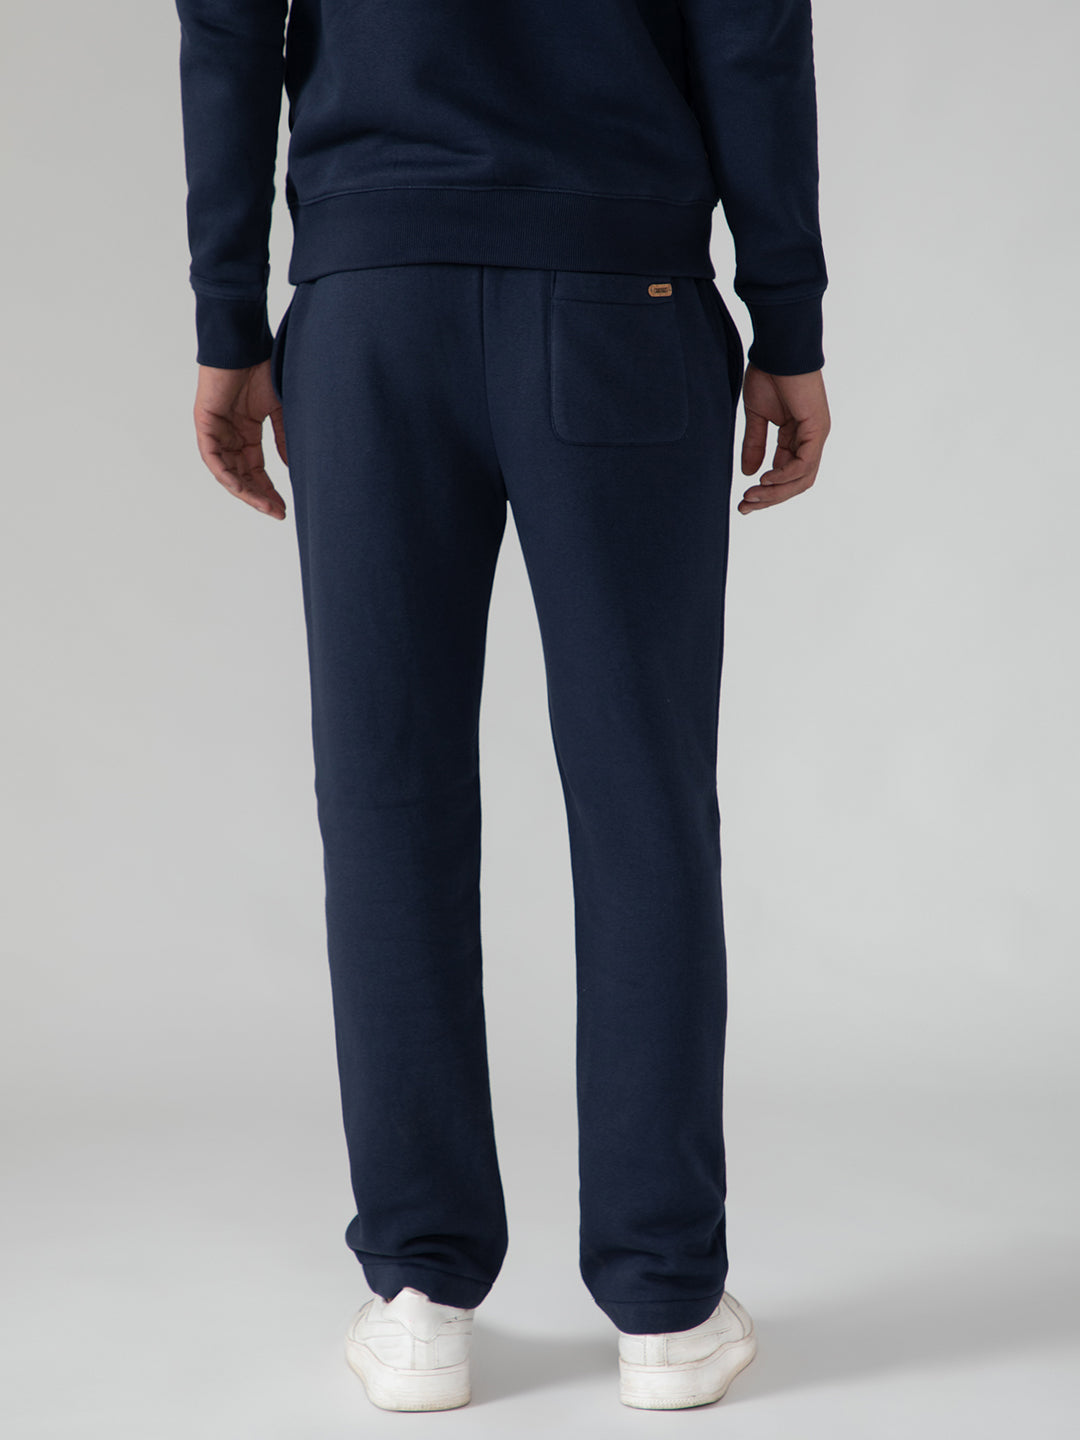 Navy Blue Knit Co-Ord Set